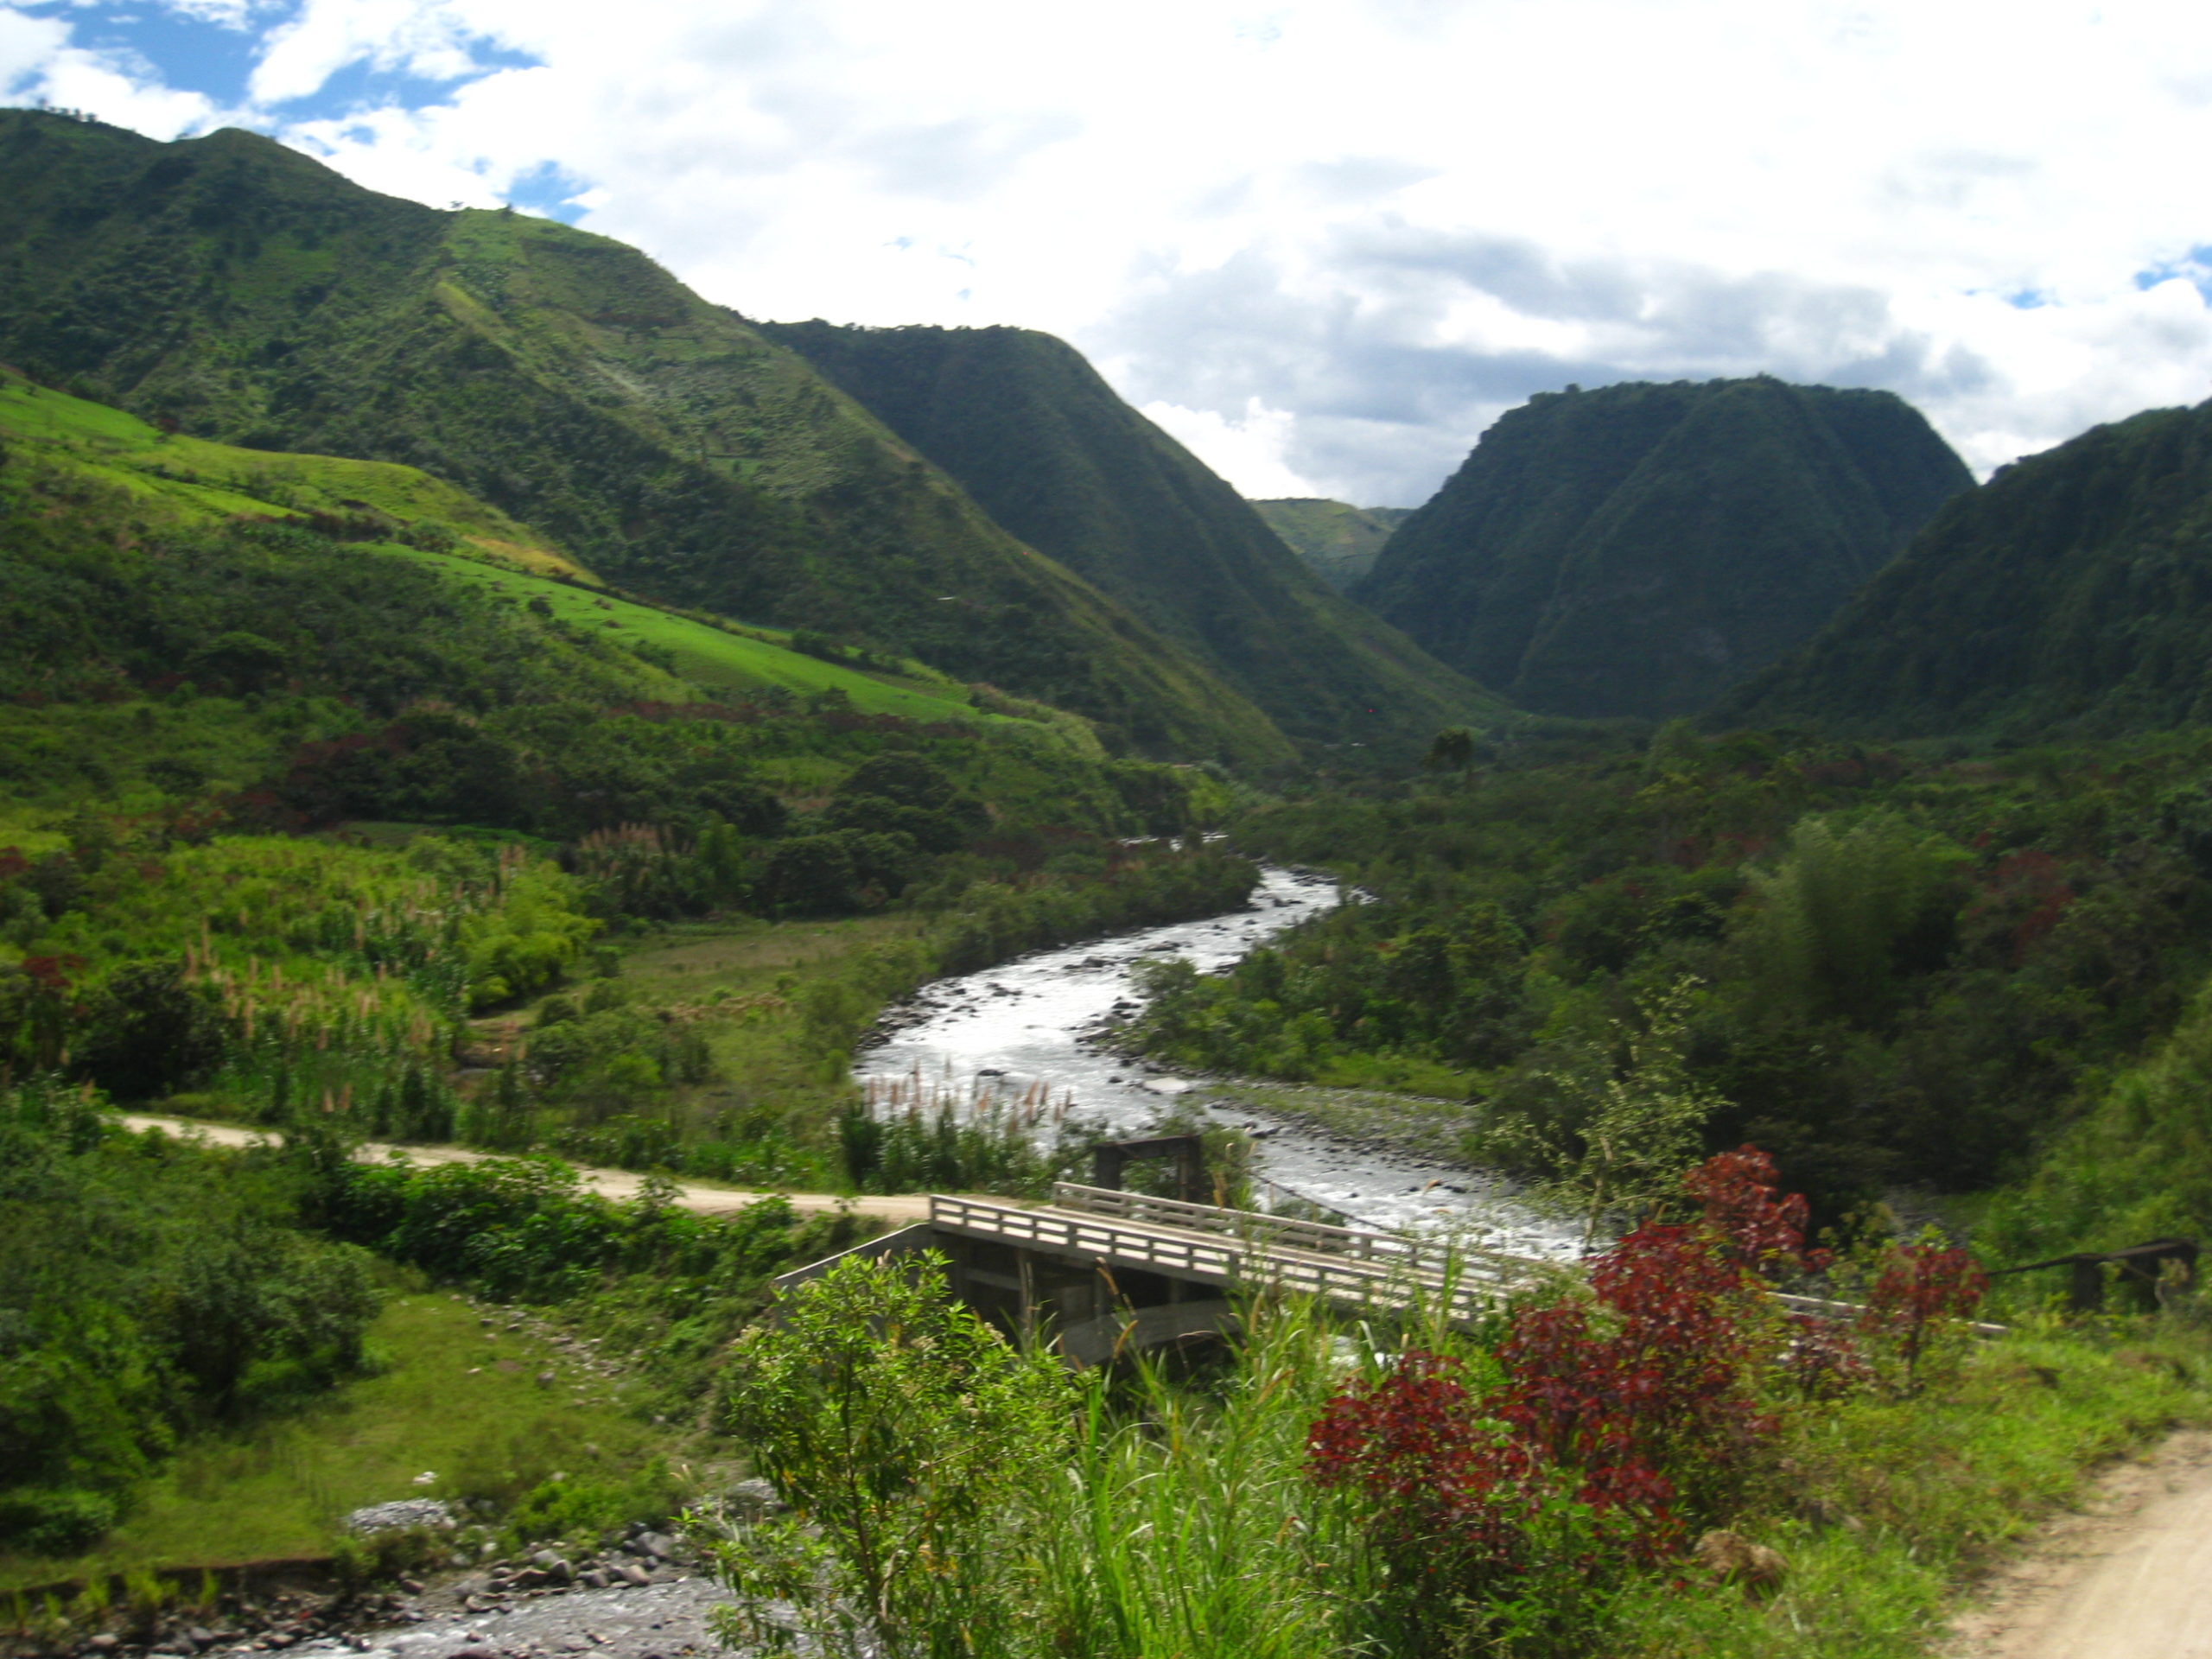 El turismo en la defensa del territorio. Evaluación de escenarios territoriales extractivos y no extractivos en Íntag, Ecuador